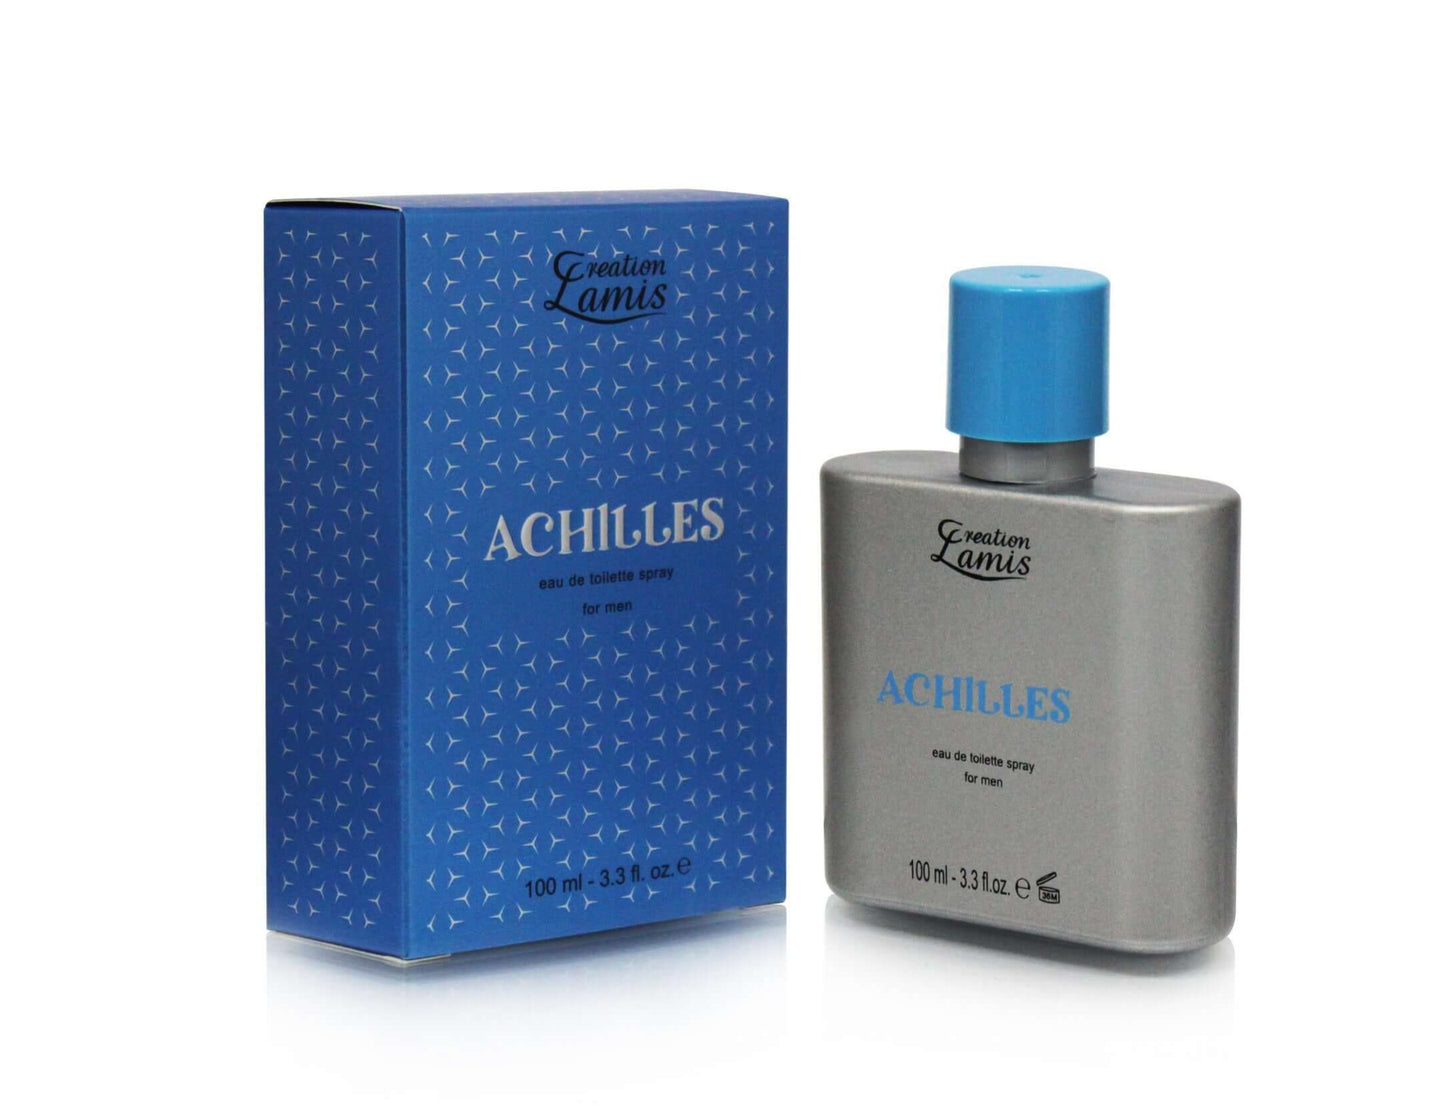 Achilles - Creation Lamis - Parfumist.nl